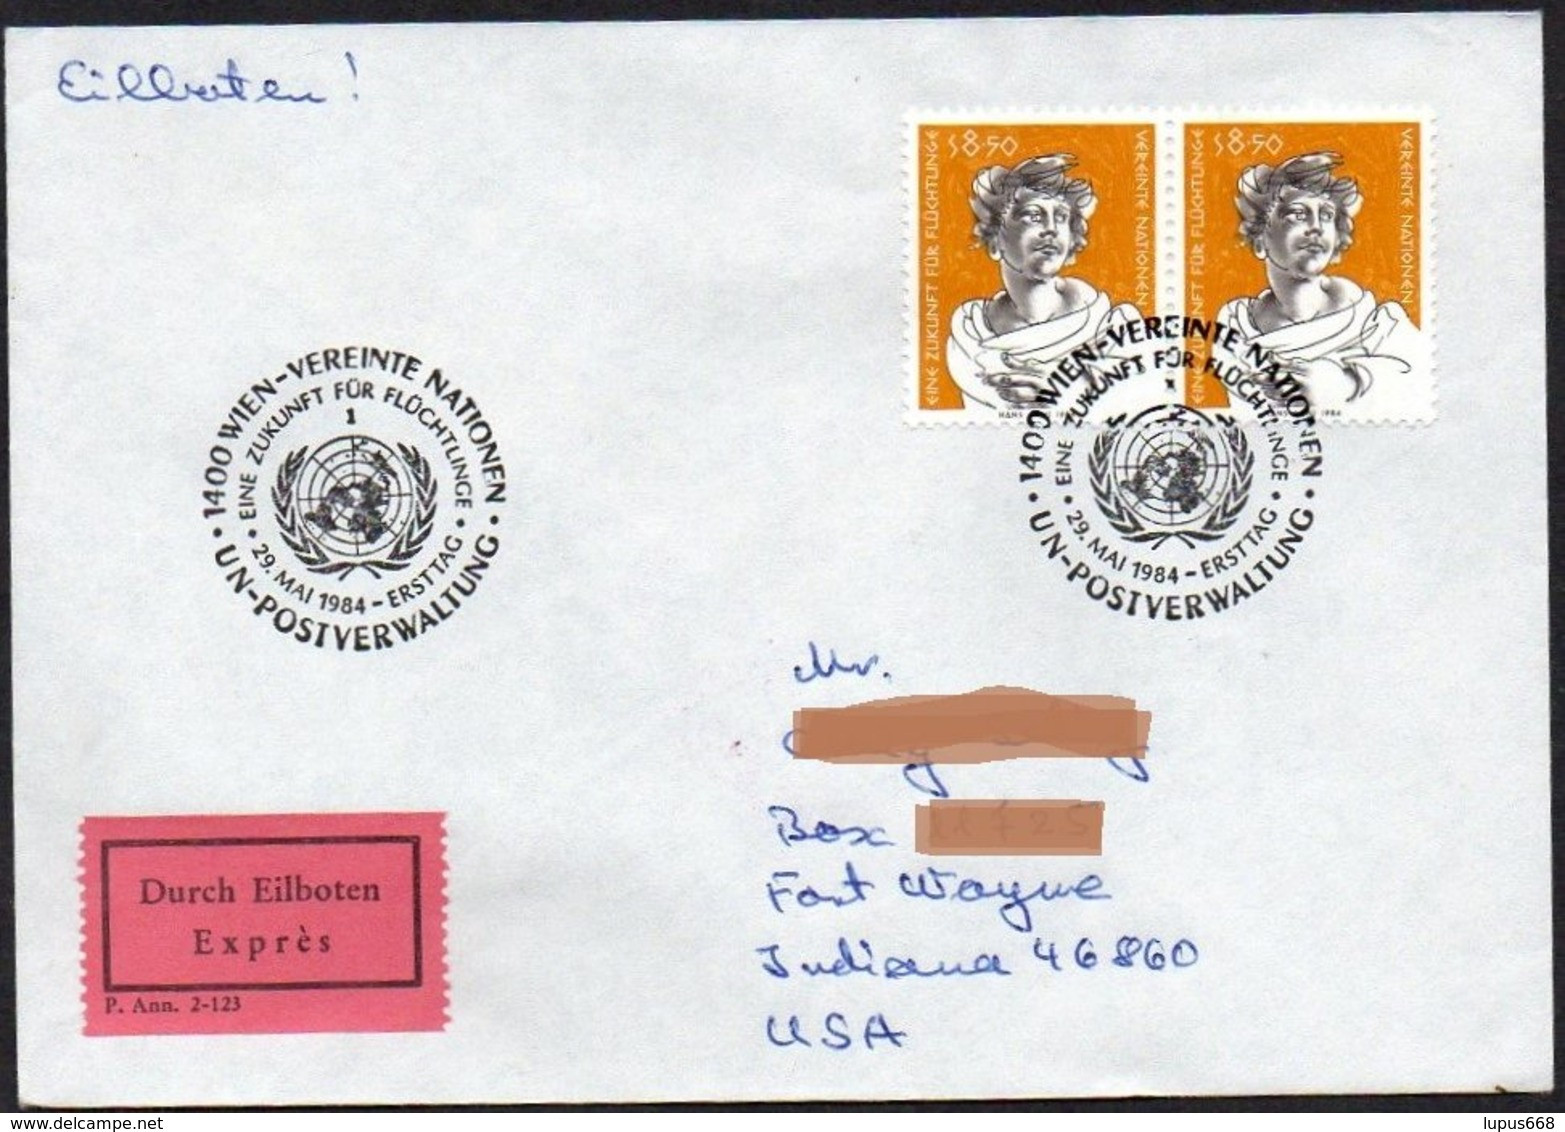 UNO - Wien  1984  MiNr. 44 (2)  Auf Express - Brief In Die U.S.A  ,  FDC; Eine Zukunft Für Flüchtlinge - Covers & Documents